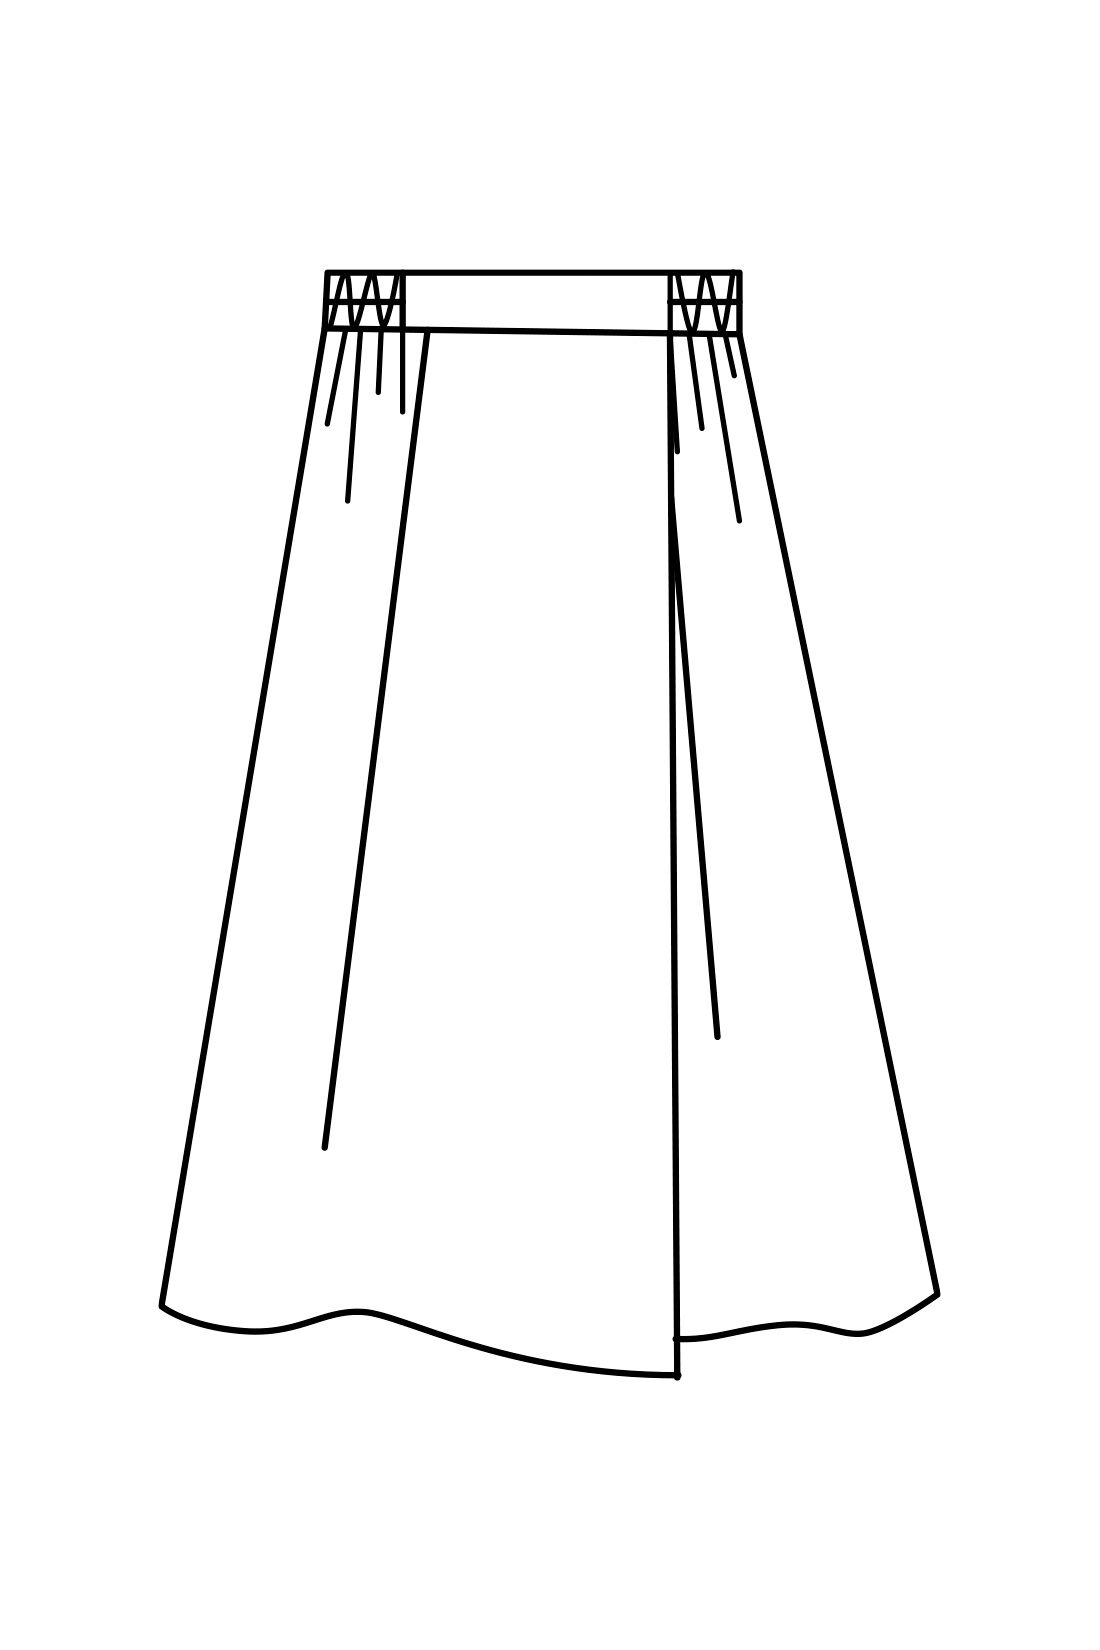 IEDIT|IEDIT[イディット]　きれいシルエットが印象的な着映えチェック柄のタックフレアースカート〈ブラック〉|片方だけフロントへ向かって深く入れたアシメトリーなタックで、単調にならず華やぎ感のあるルックスに。